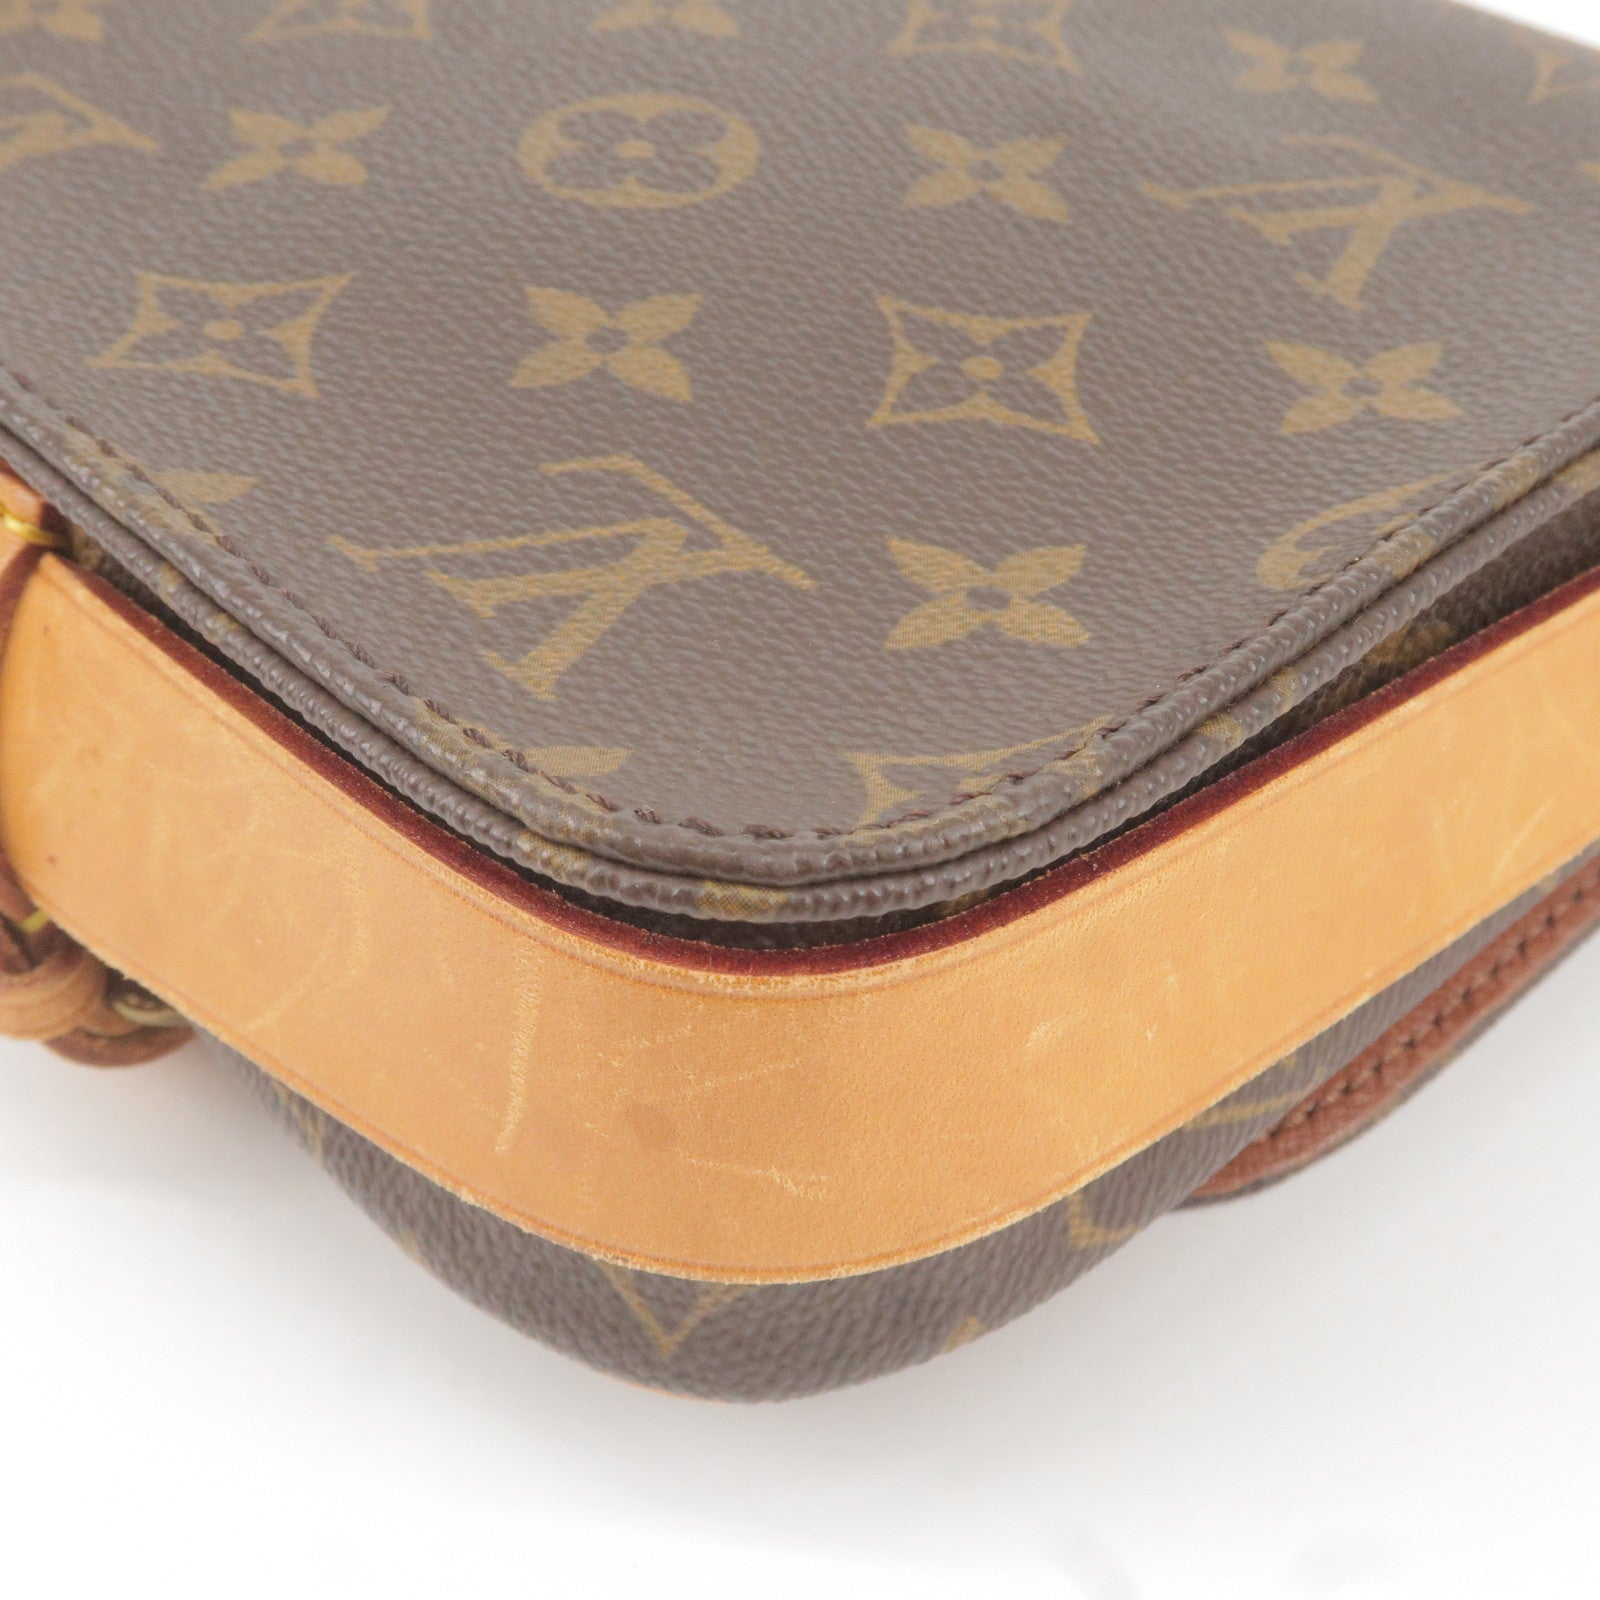 Louis Vuitton Loop Pink  Louis vuitton, Handbag stores, Retail bag